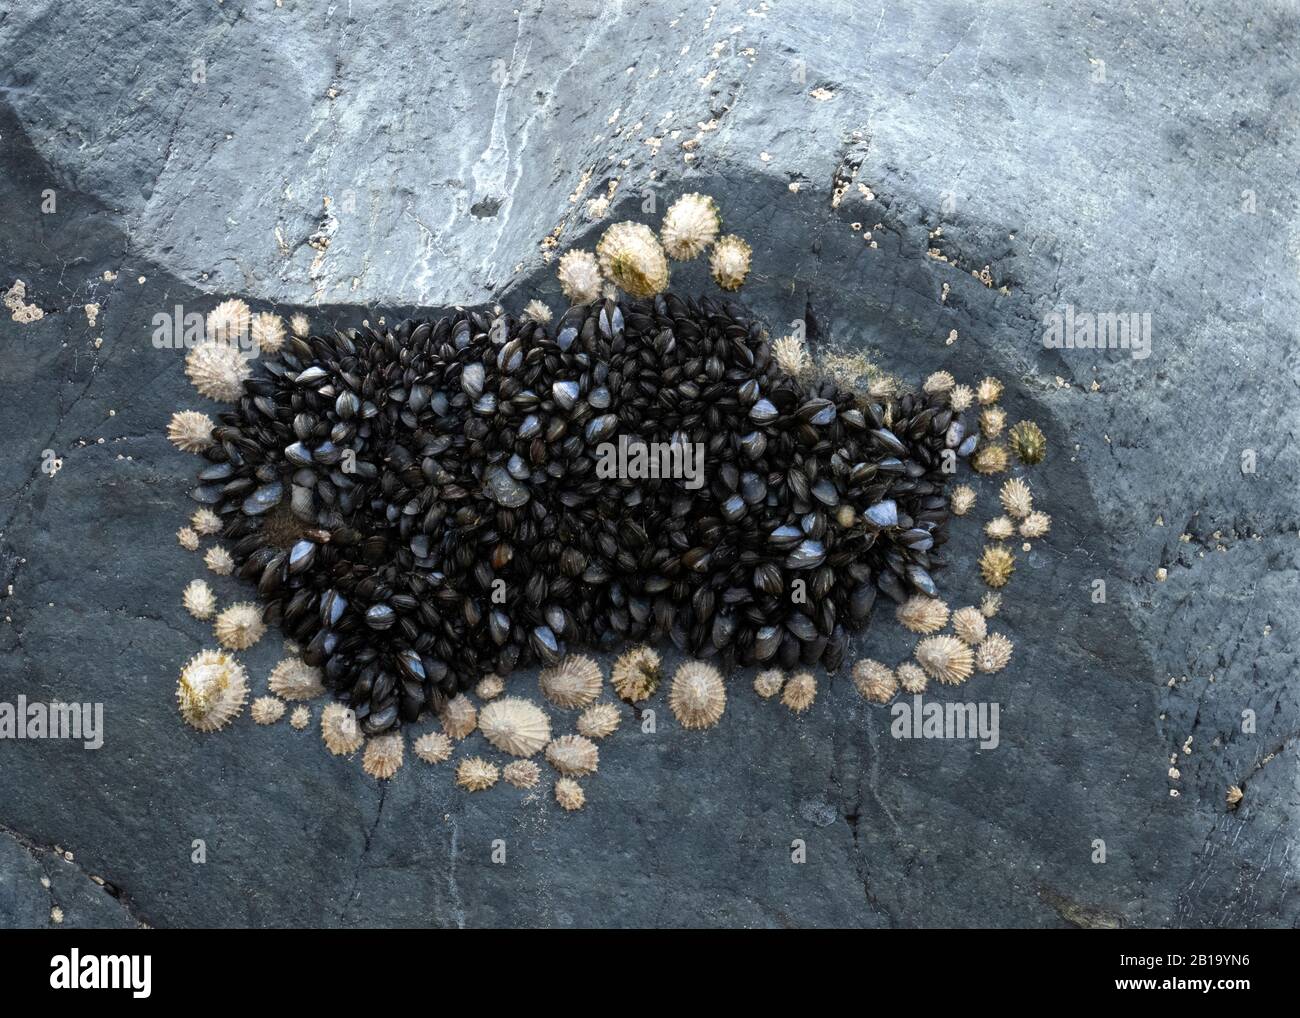 Foto der Bio-Diversity An Der Küste mit Muscheln und Limpeten, die an Meeresfelsen befestigt sind und Meeresbewohner zeigen, die Formen von Mustern kolonisieren und zeigen Stockfoto